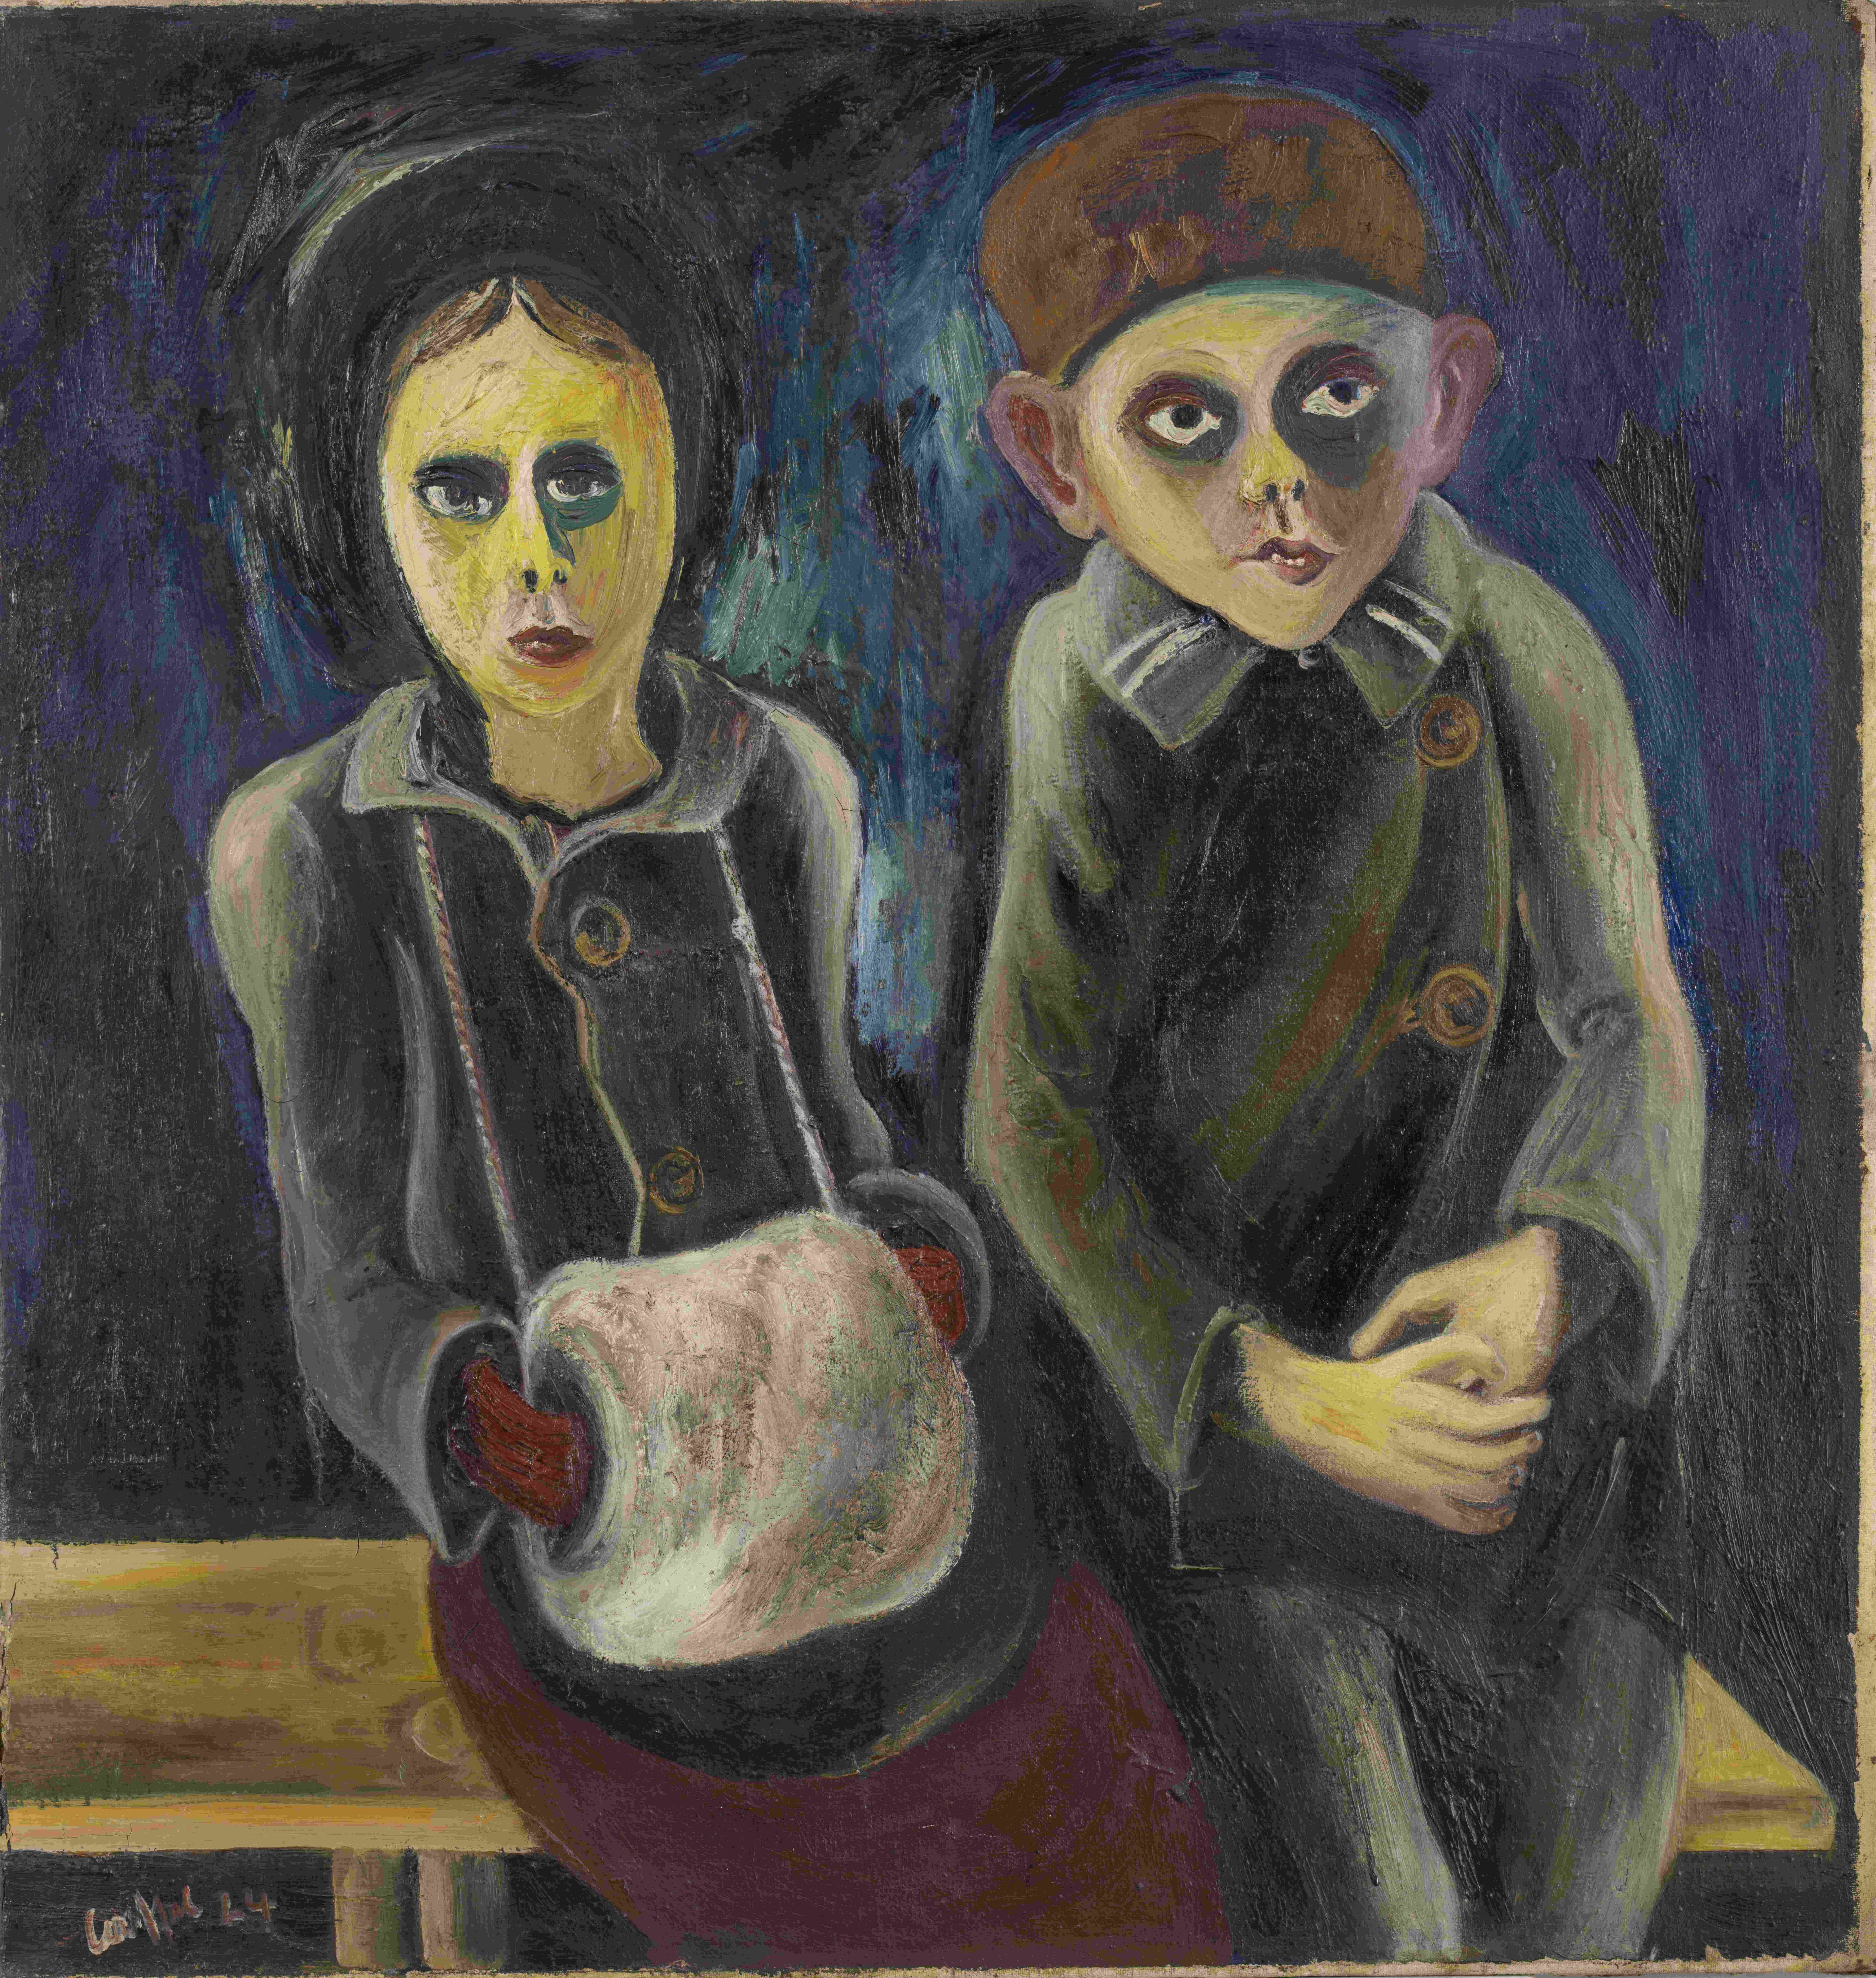 Zwei Kinder auf der Bank (Kunstsammlungen Chemnitz, Inv.-Nr. 591 CC BY-NC-ND)